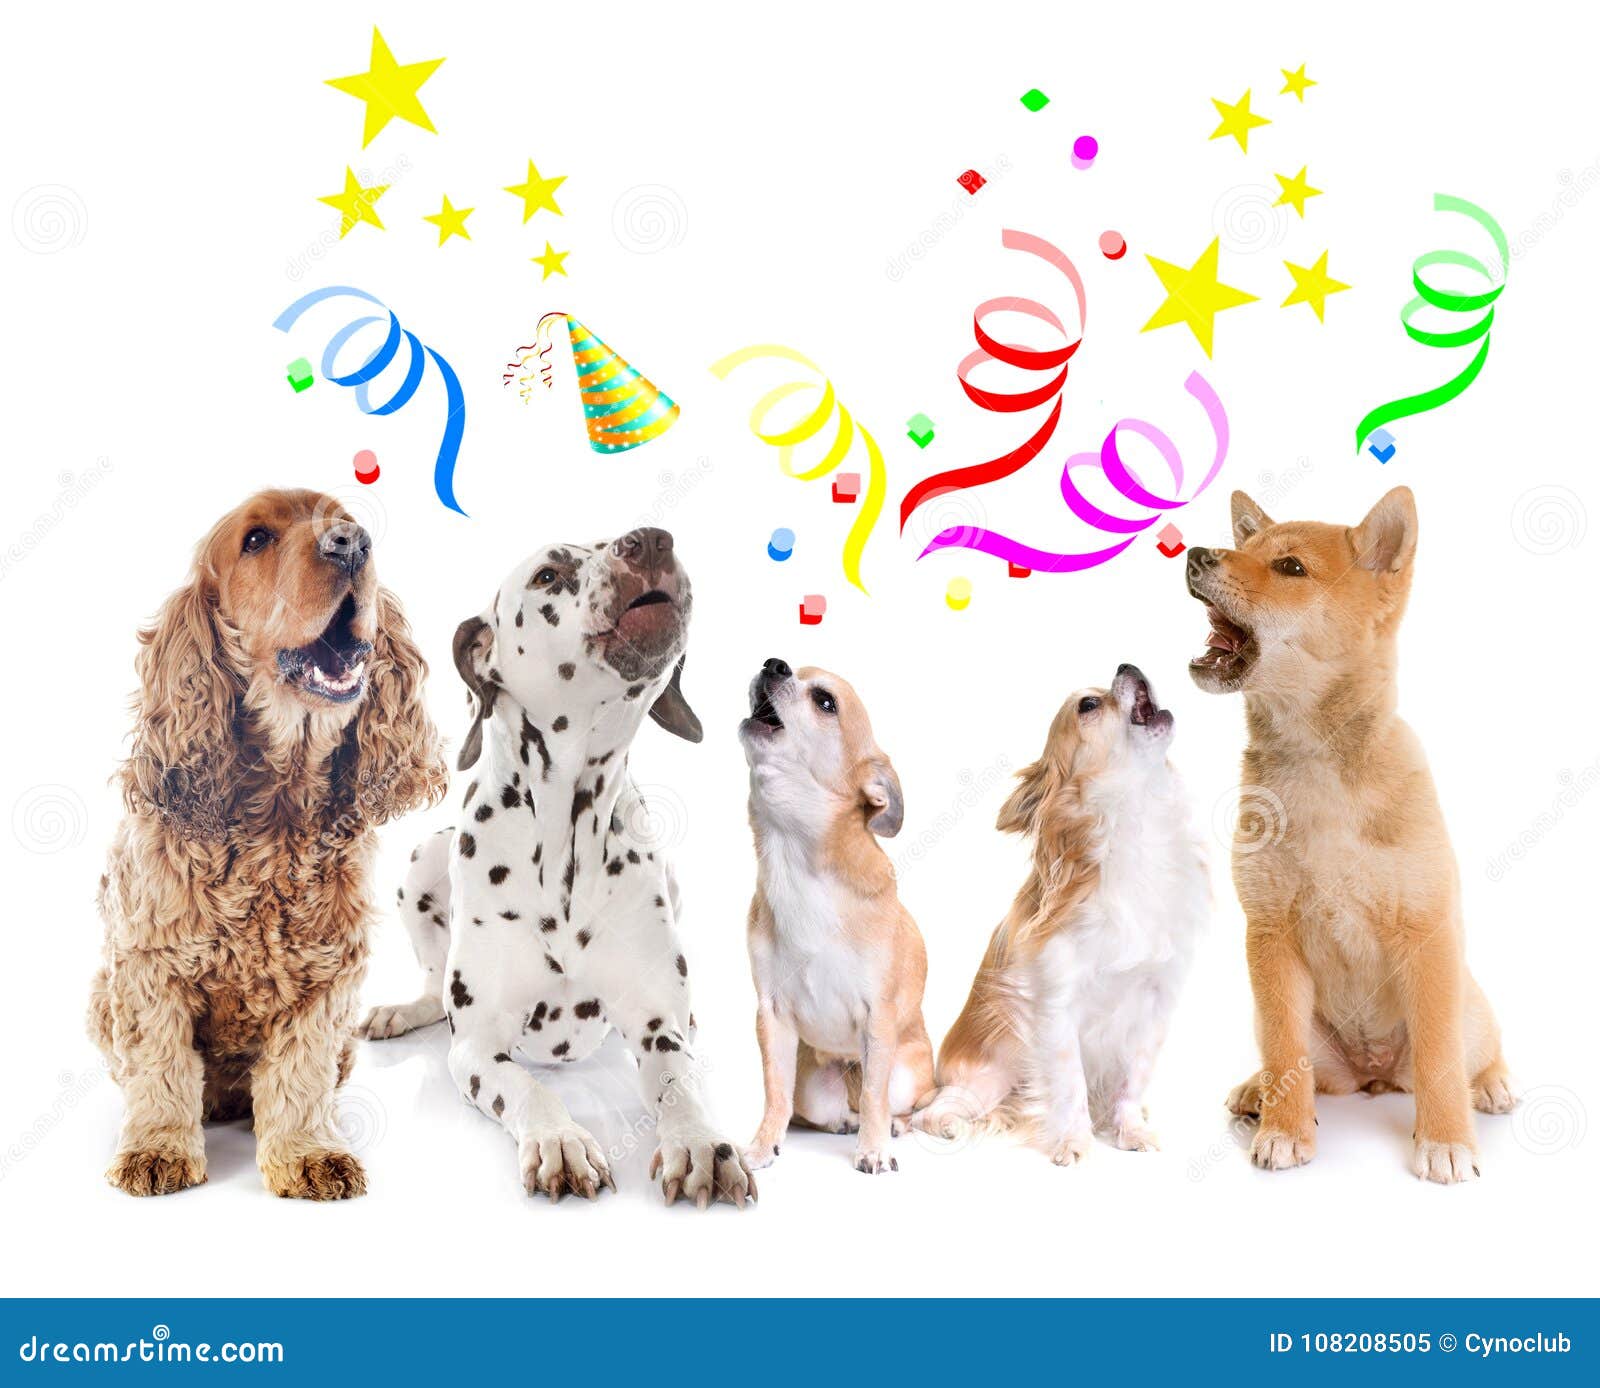 Honden Die Voor Verjaardag Huilen Stock Afbeelding - Image Of Krankzinnig,  Spaniel: 108208505